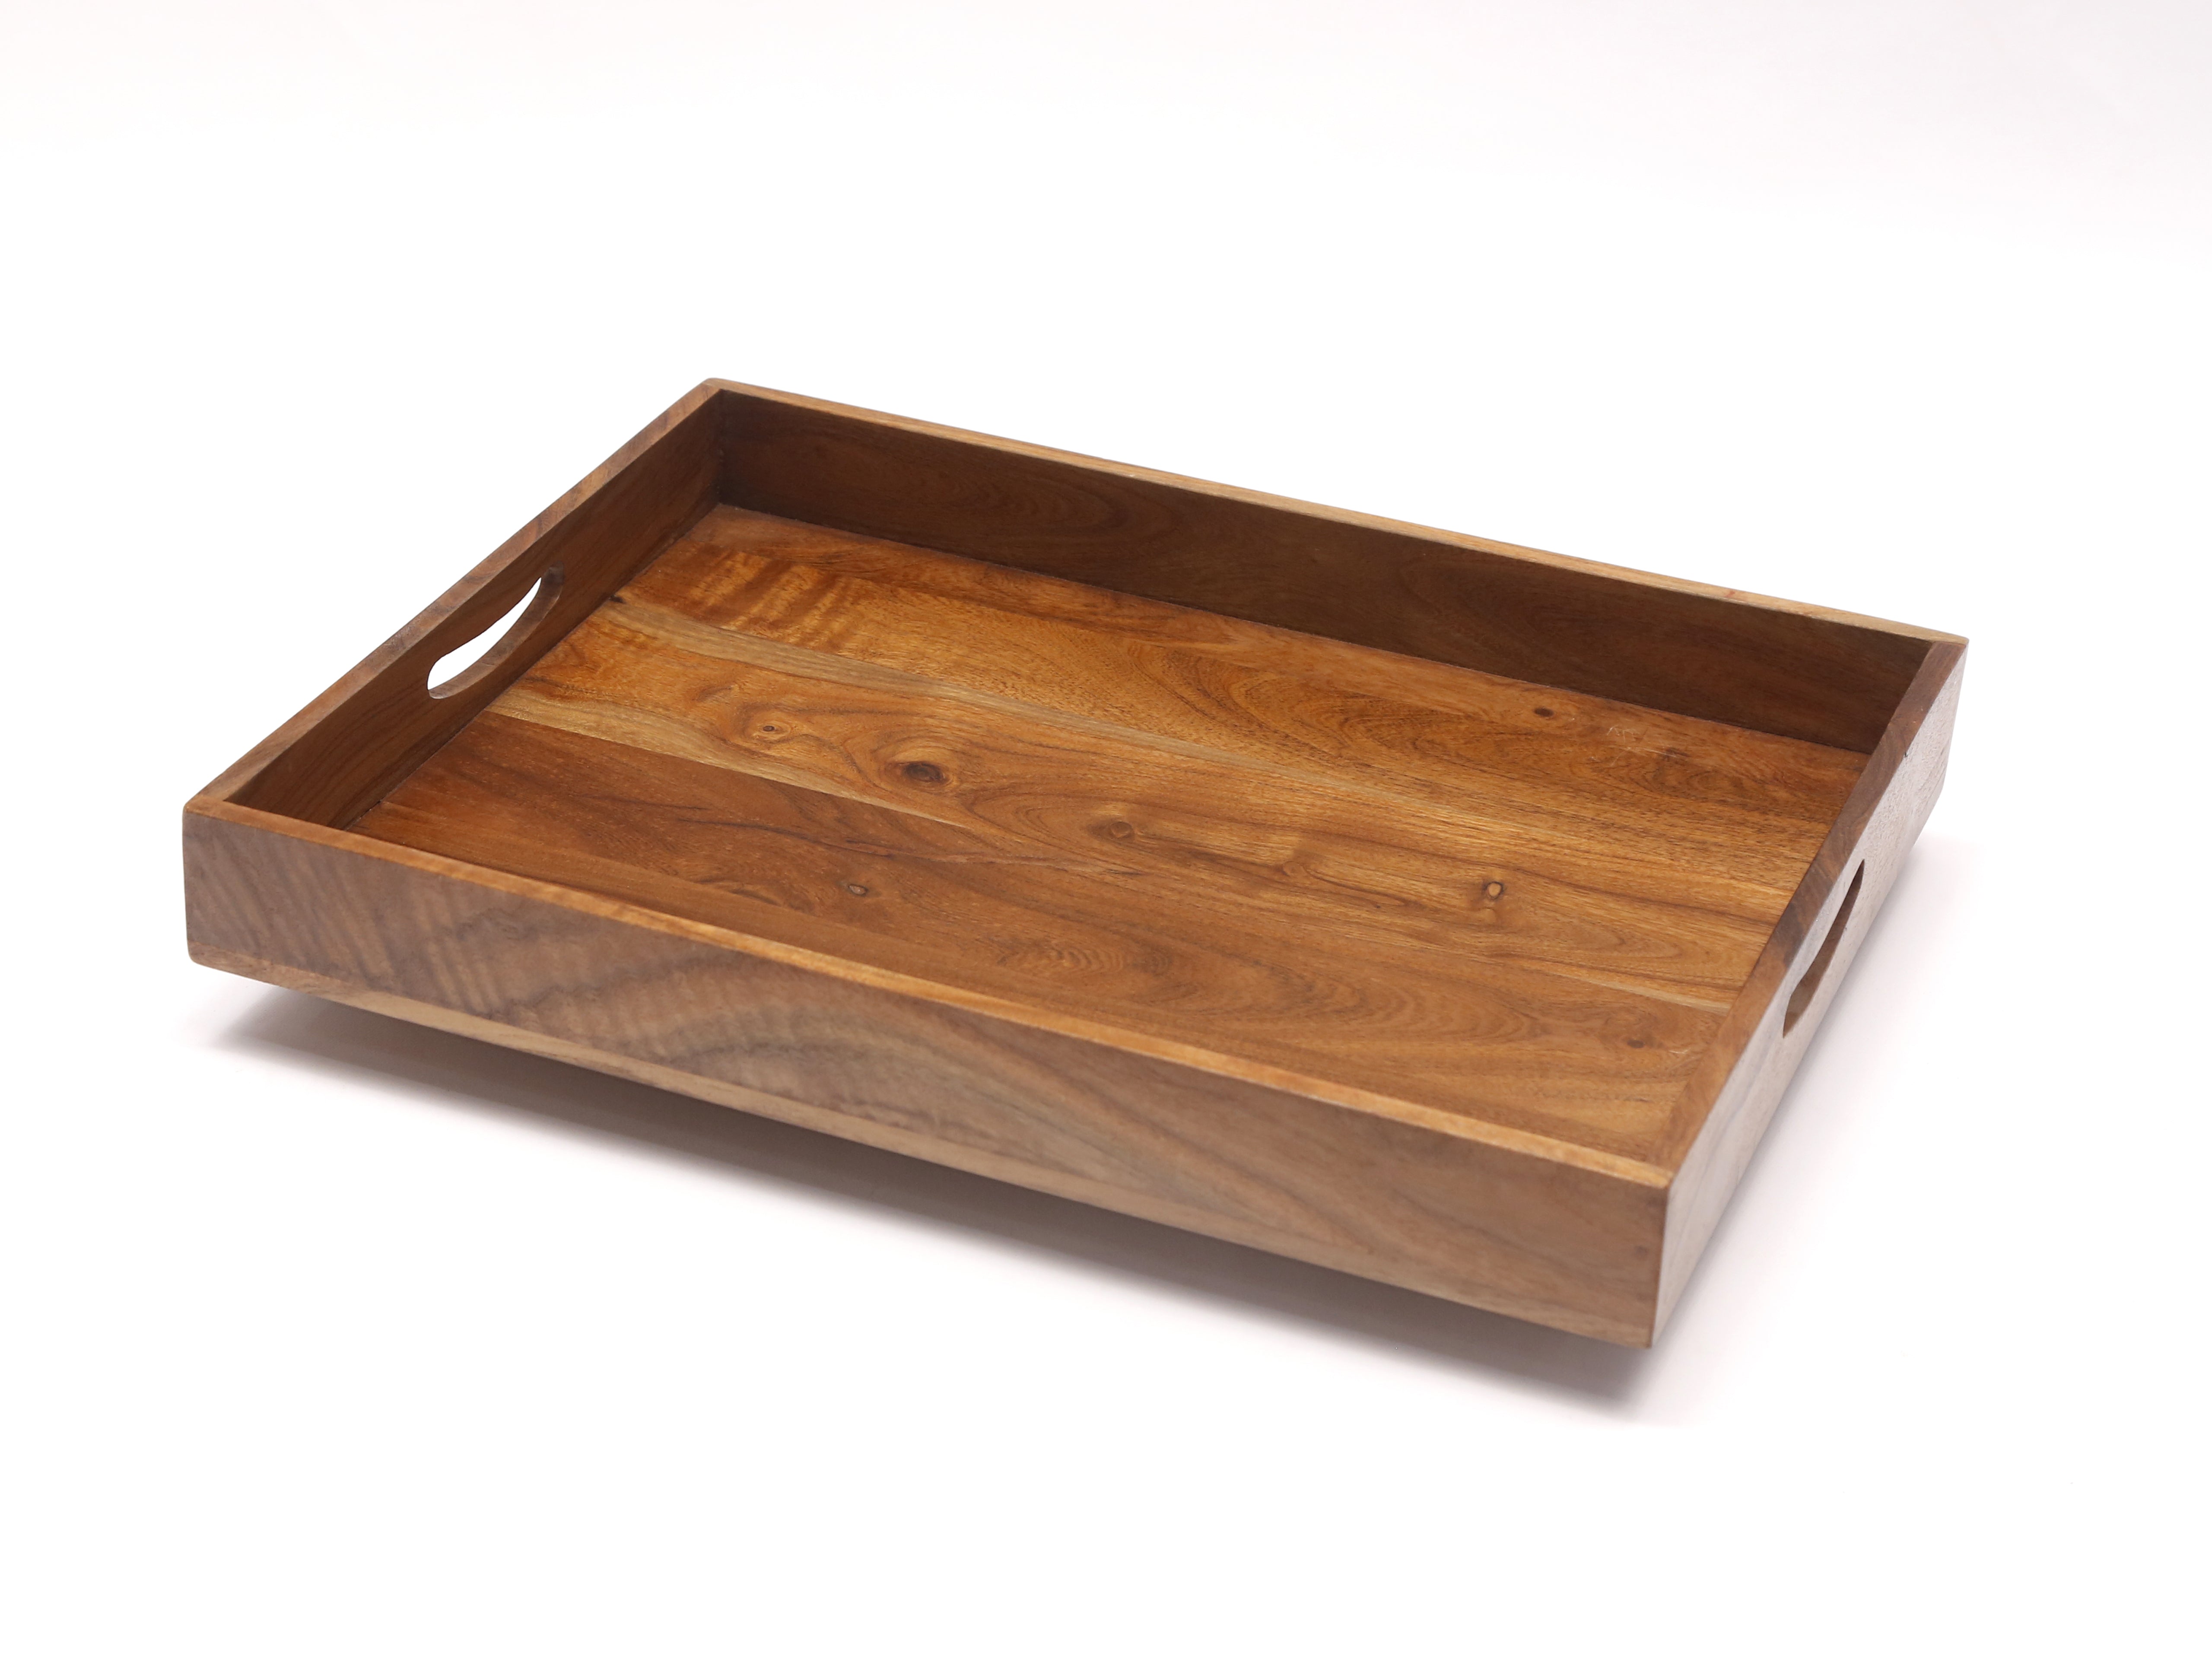 Inclined Wooden Box Tray Set Tray